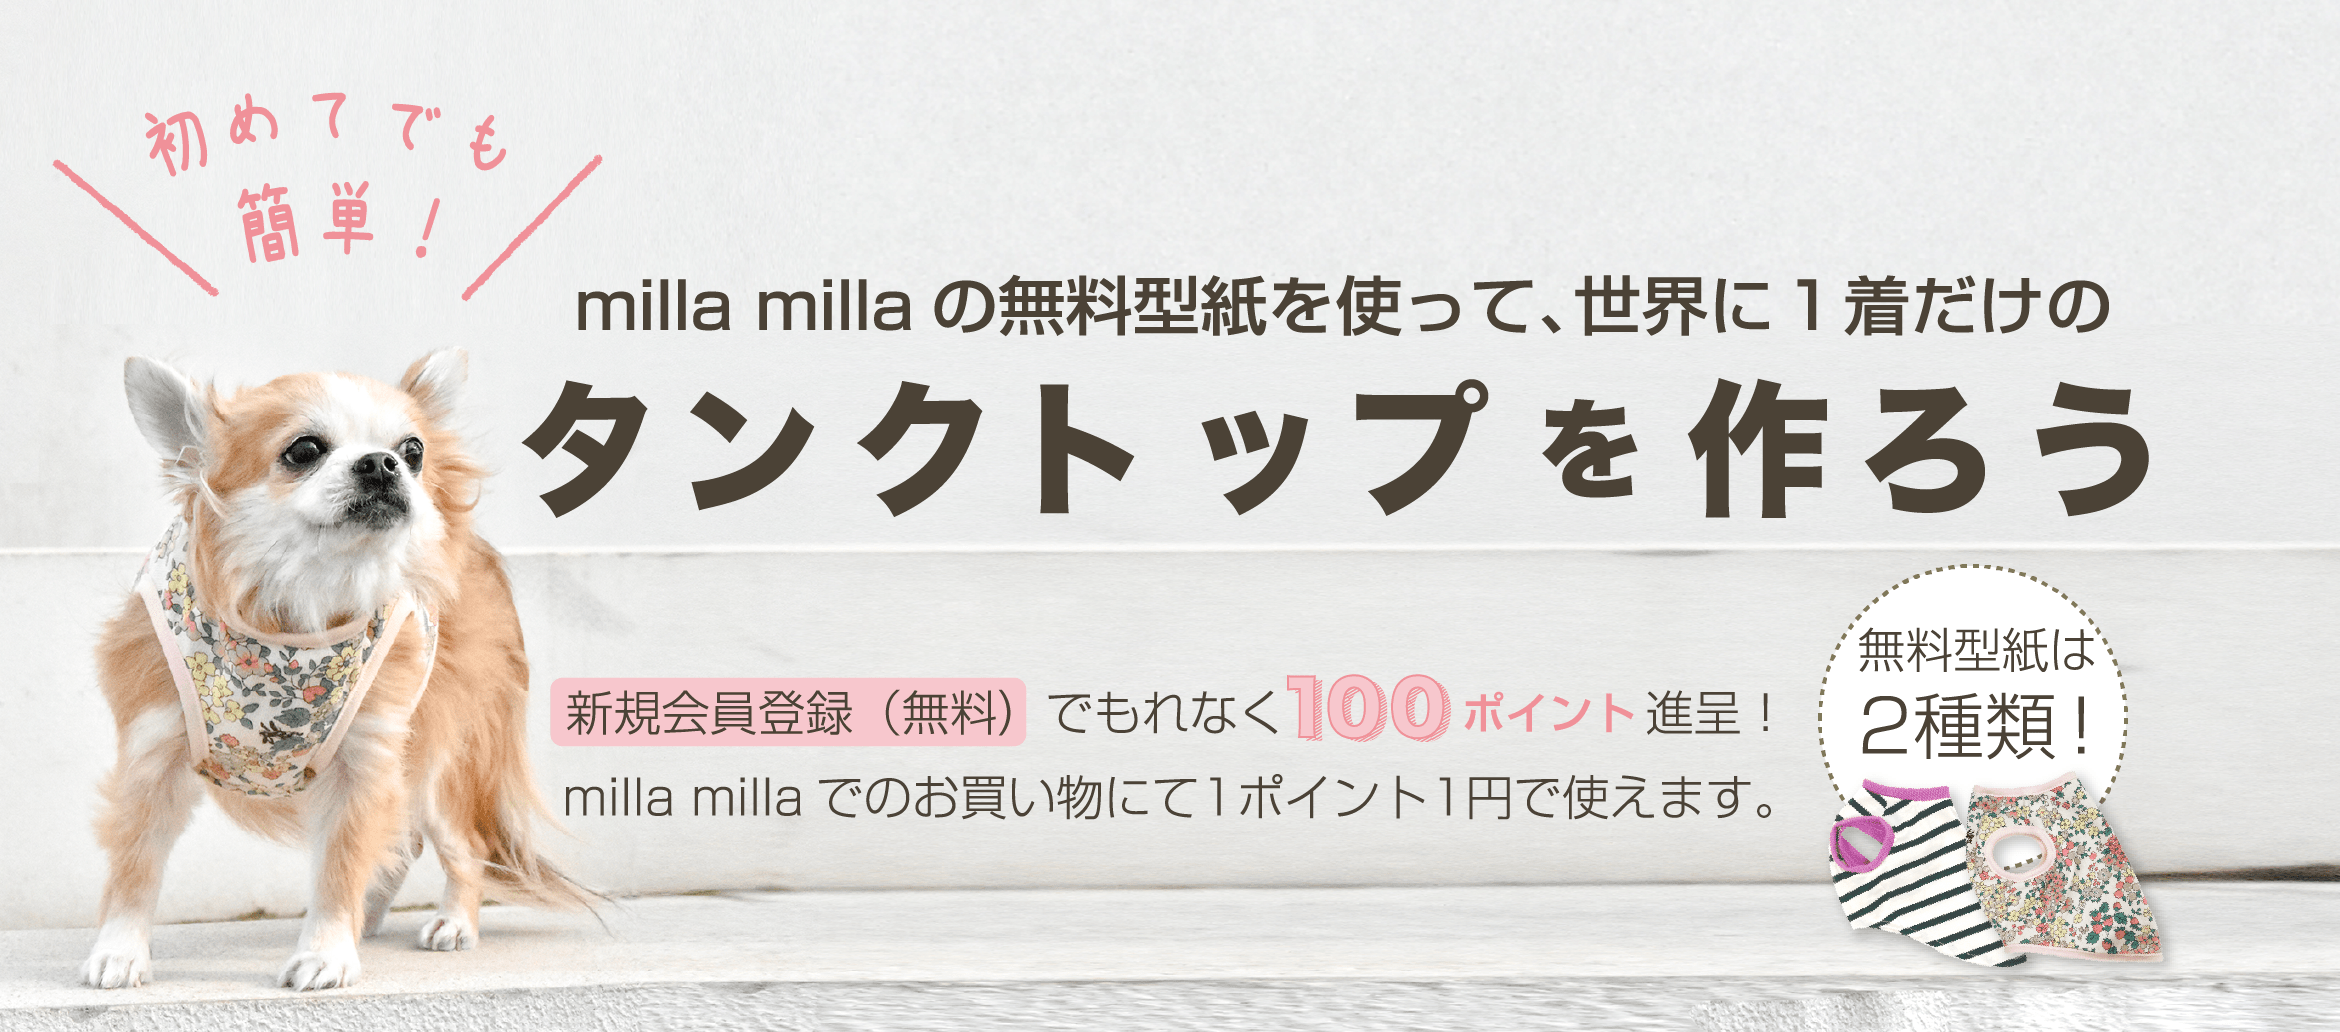 milla millaの無料型紙を使って、世界に1着だけのタンクトップを作ろう